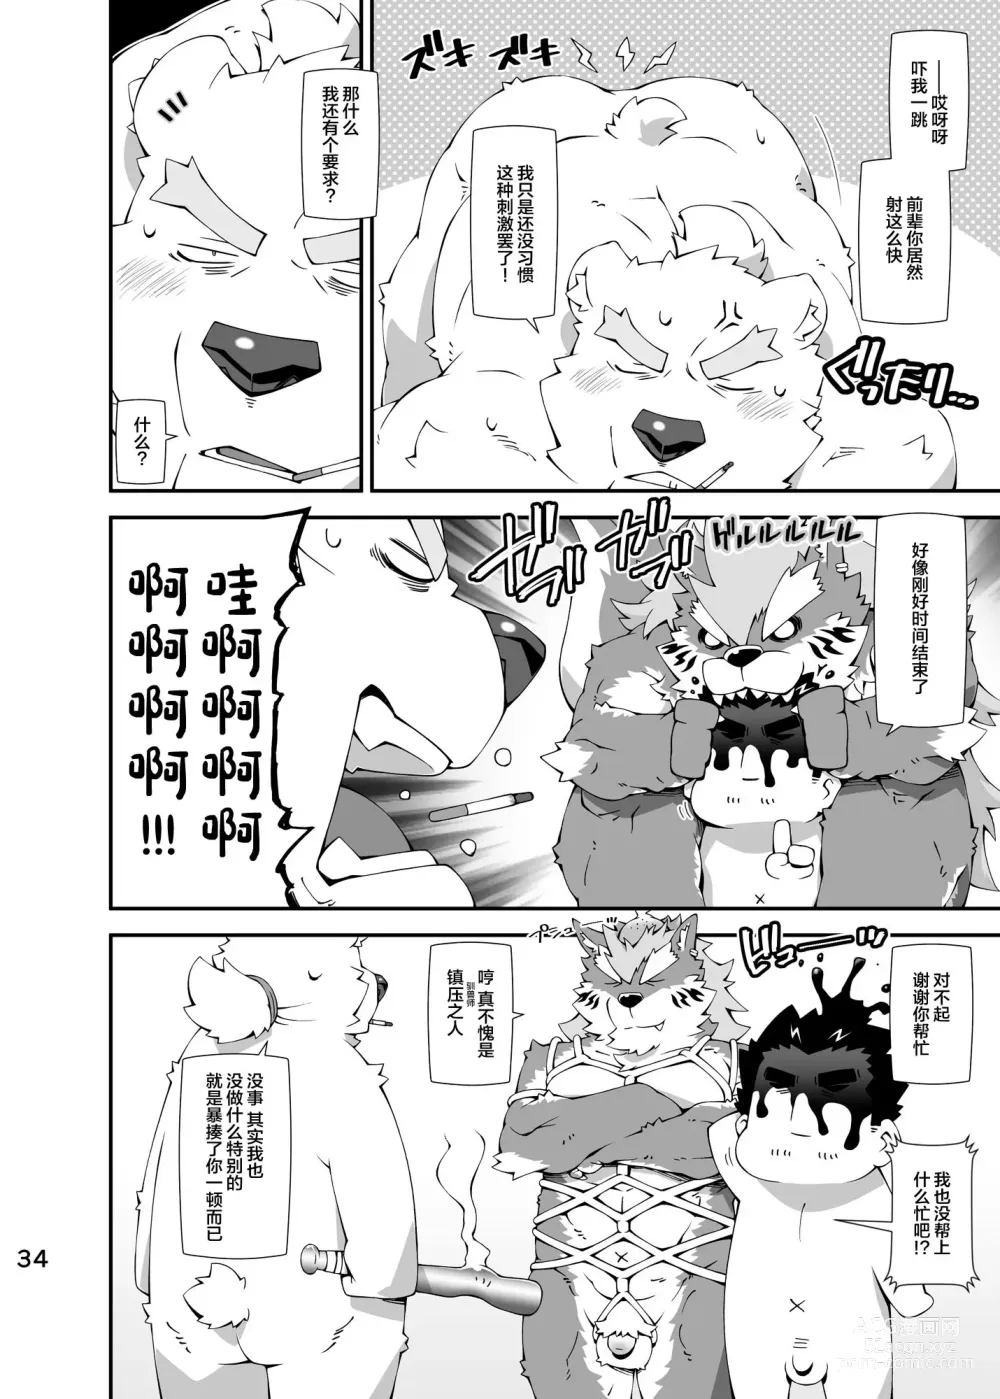 Page 33 of doujinshi Shirokuma to Fe